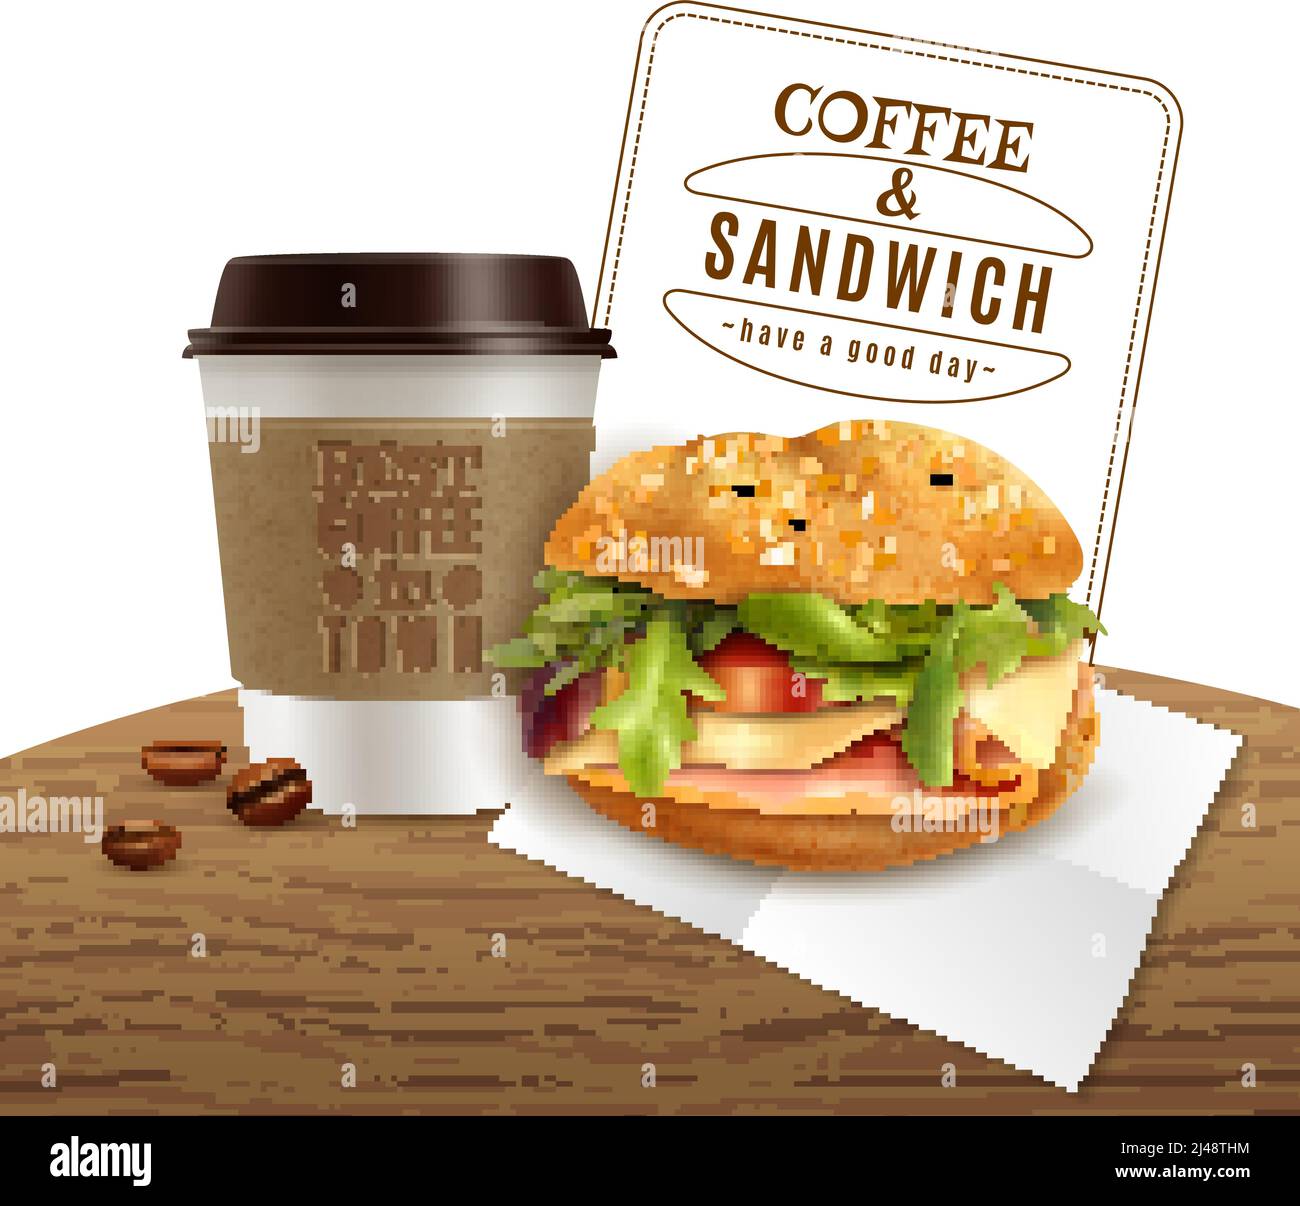 Fast food, pranzo, menu colazione, poster pubblicitario realistico con take-away caffè e delizioso formaggio prosciutto panino illustrazione vettoriale Illustrazione Vettoriale